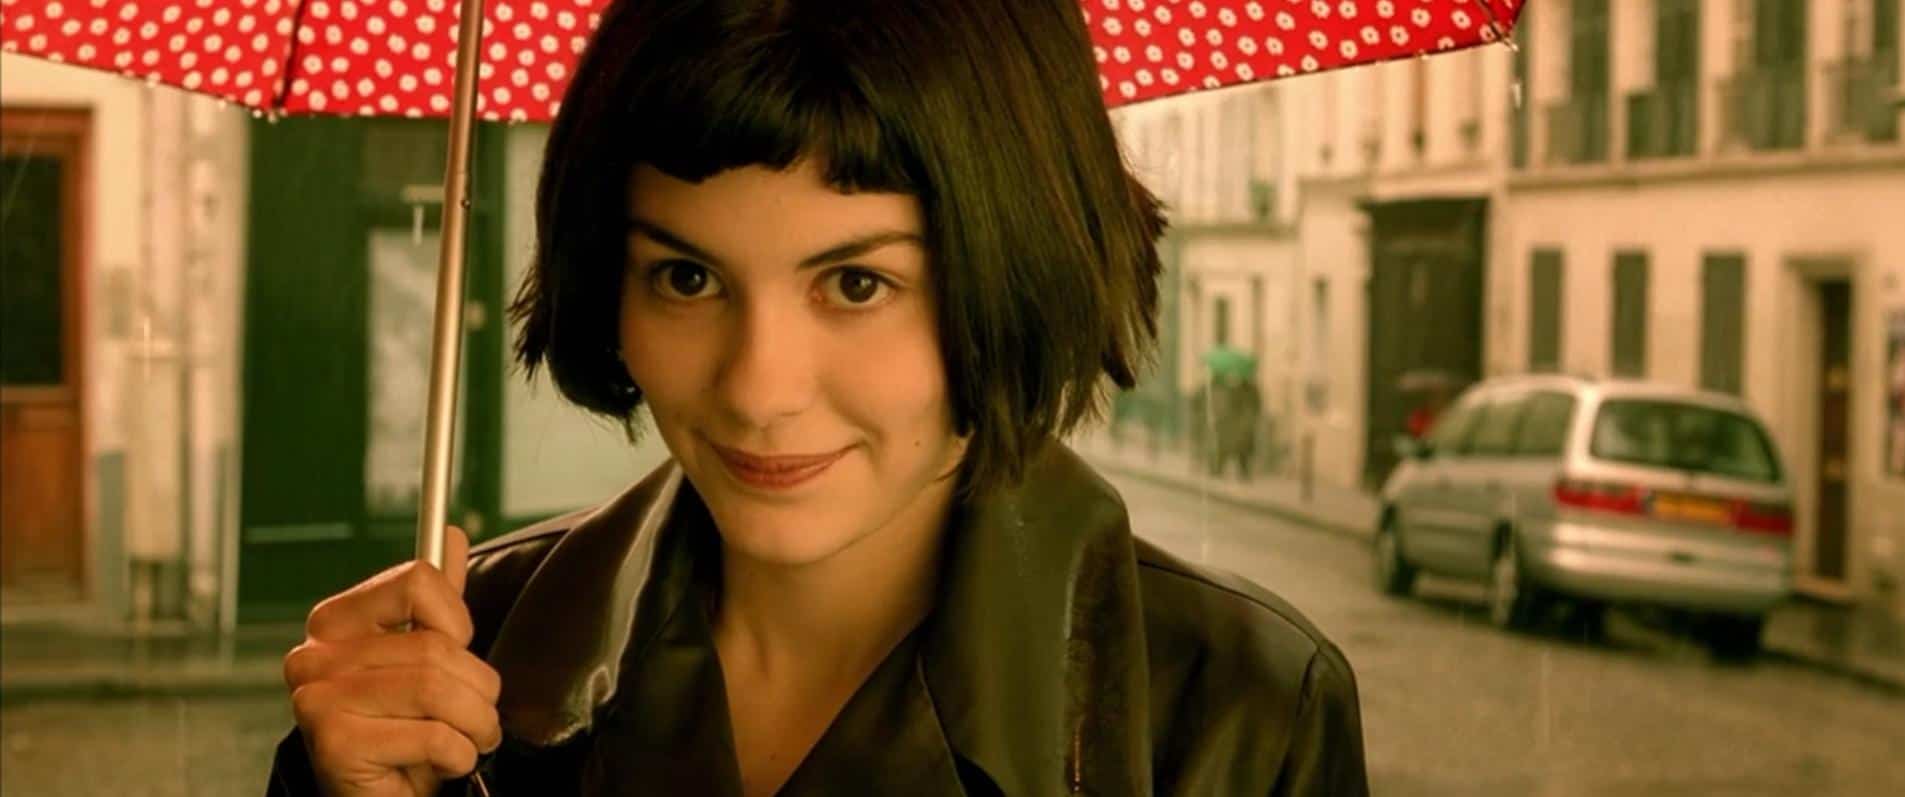 Amélie (2001) | Audrey Tautou in Amélie (2001)